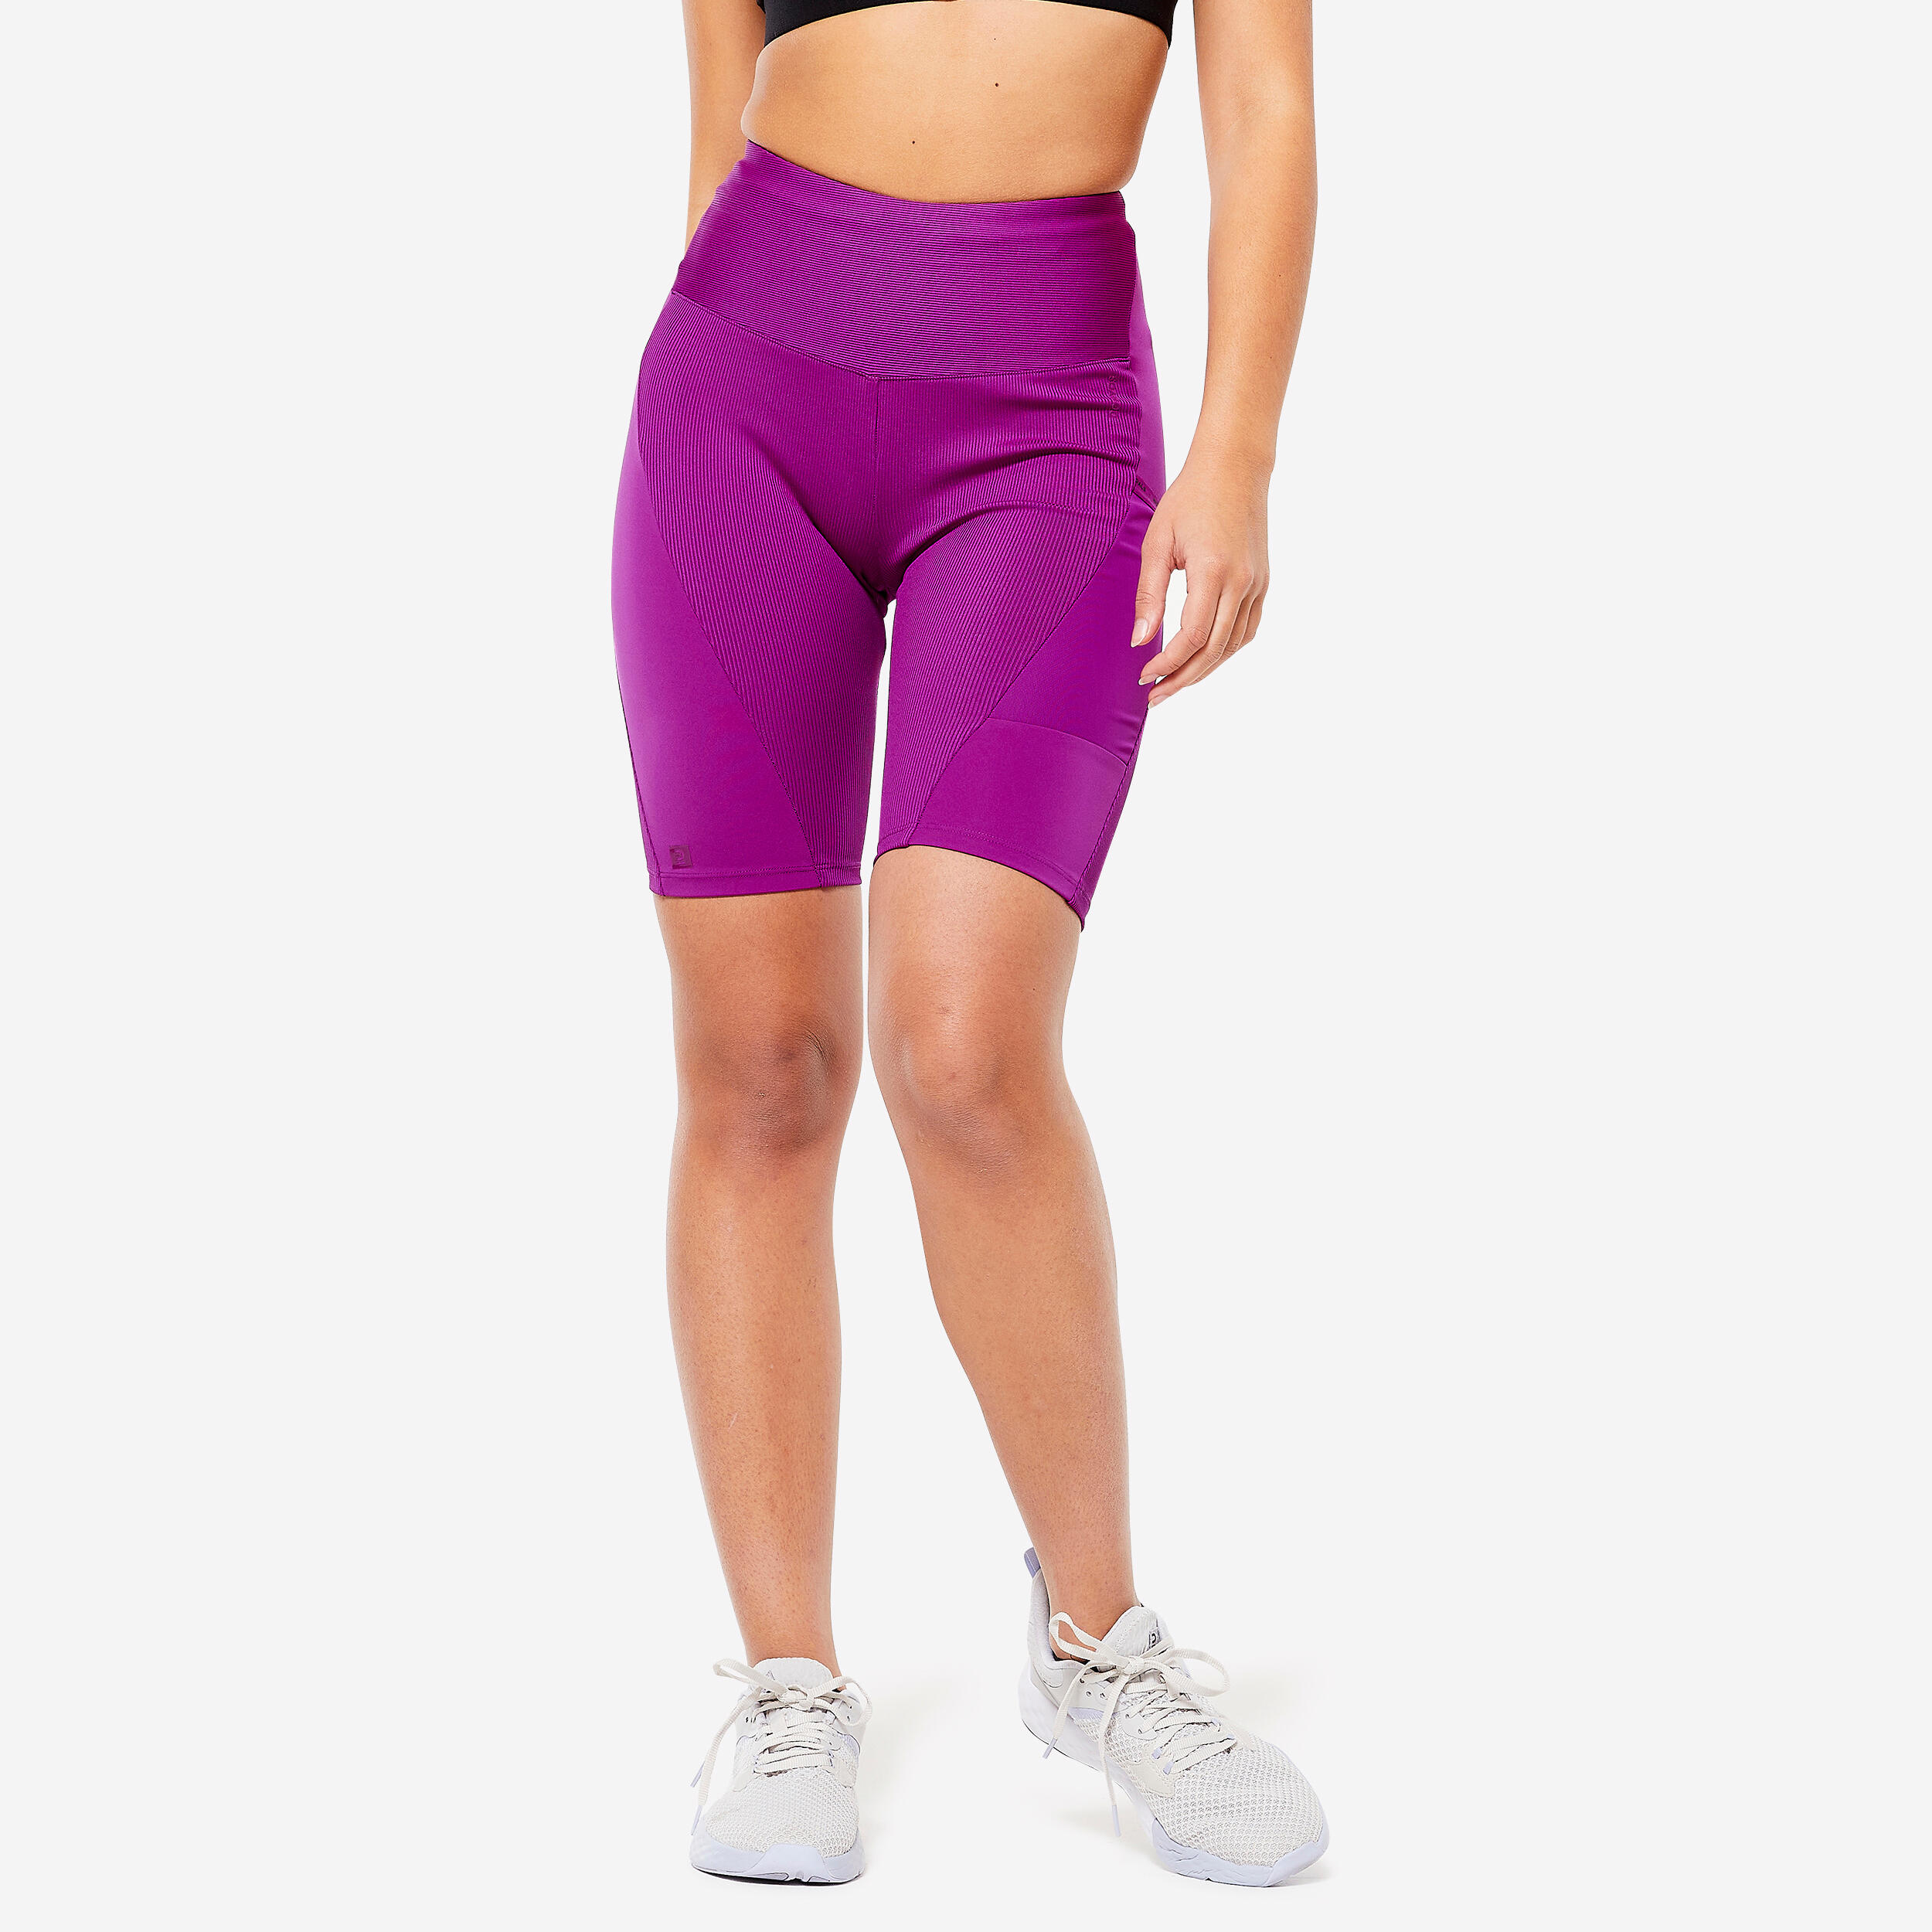 Women's Lemonade Gel Padded Cycling Underwear-Briefs – Online Cycling Gear